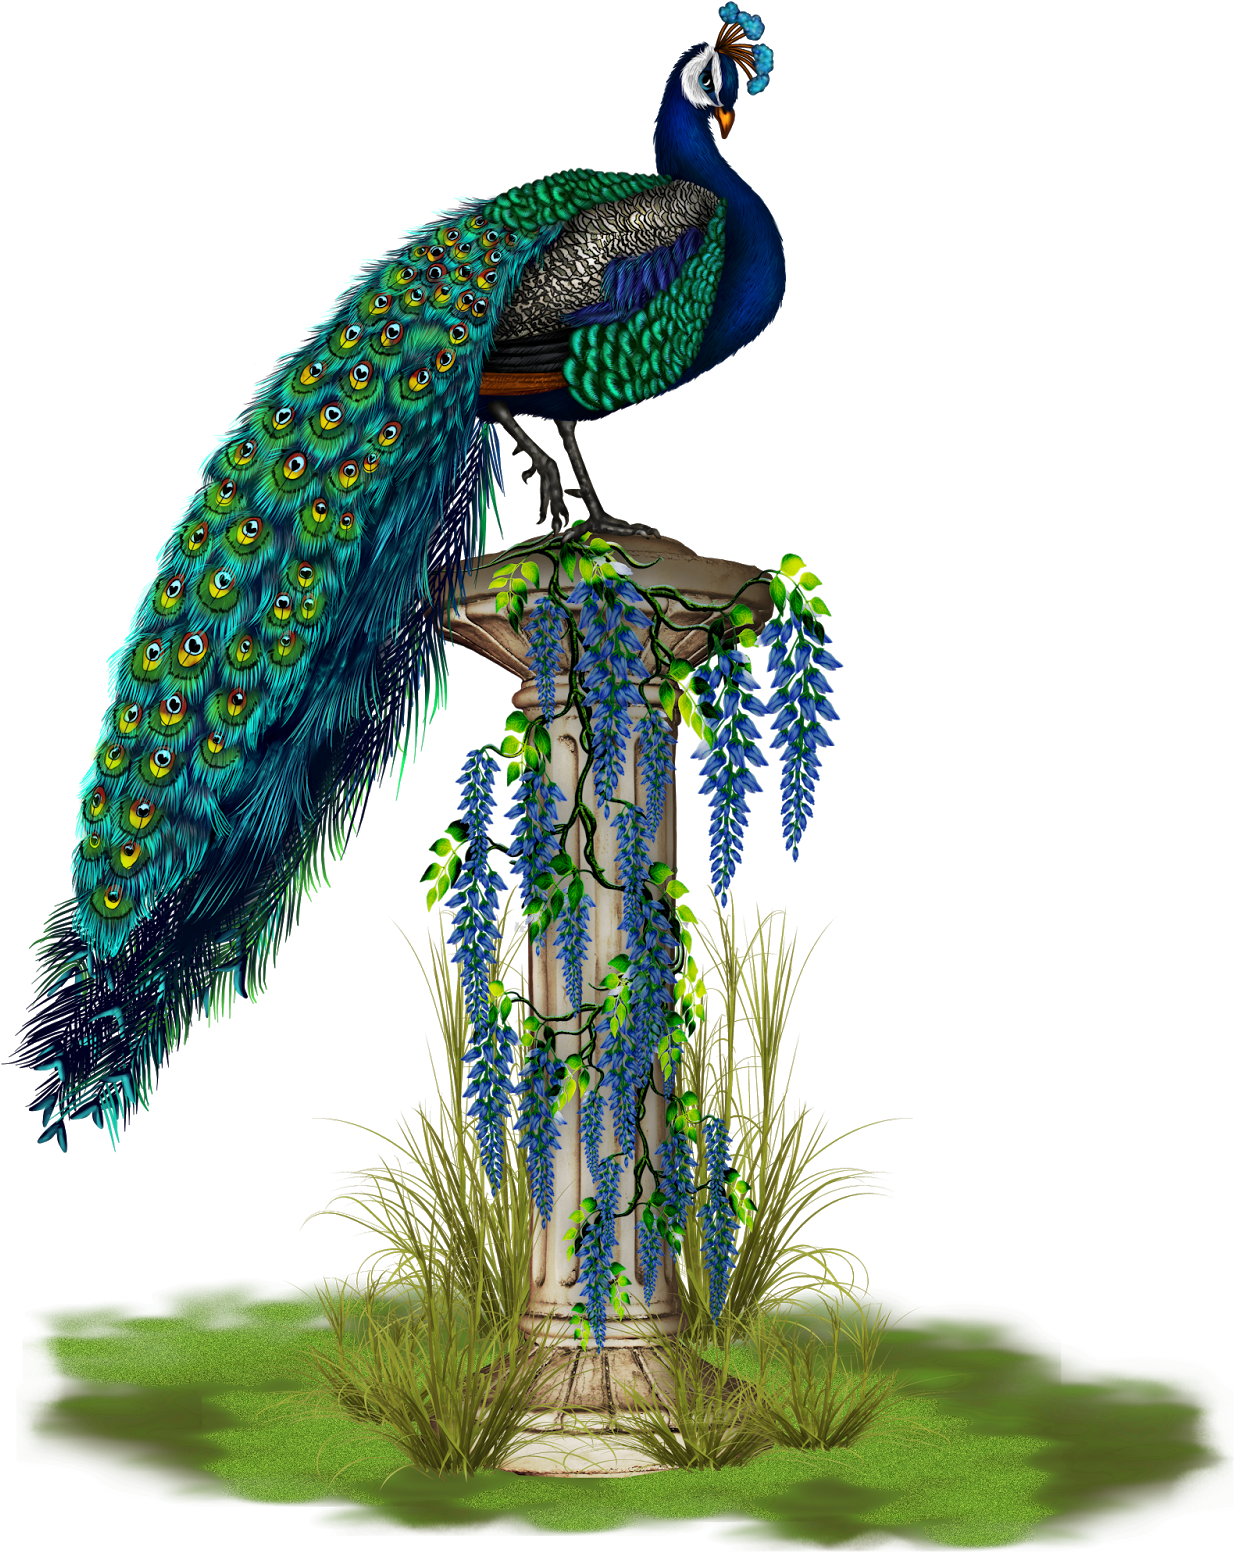 A Peacock Standing On A Pillar